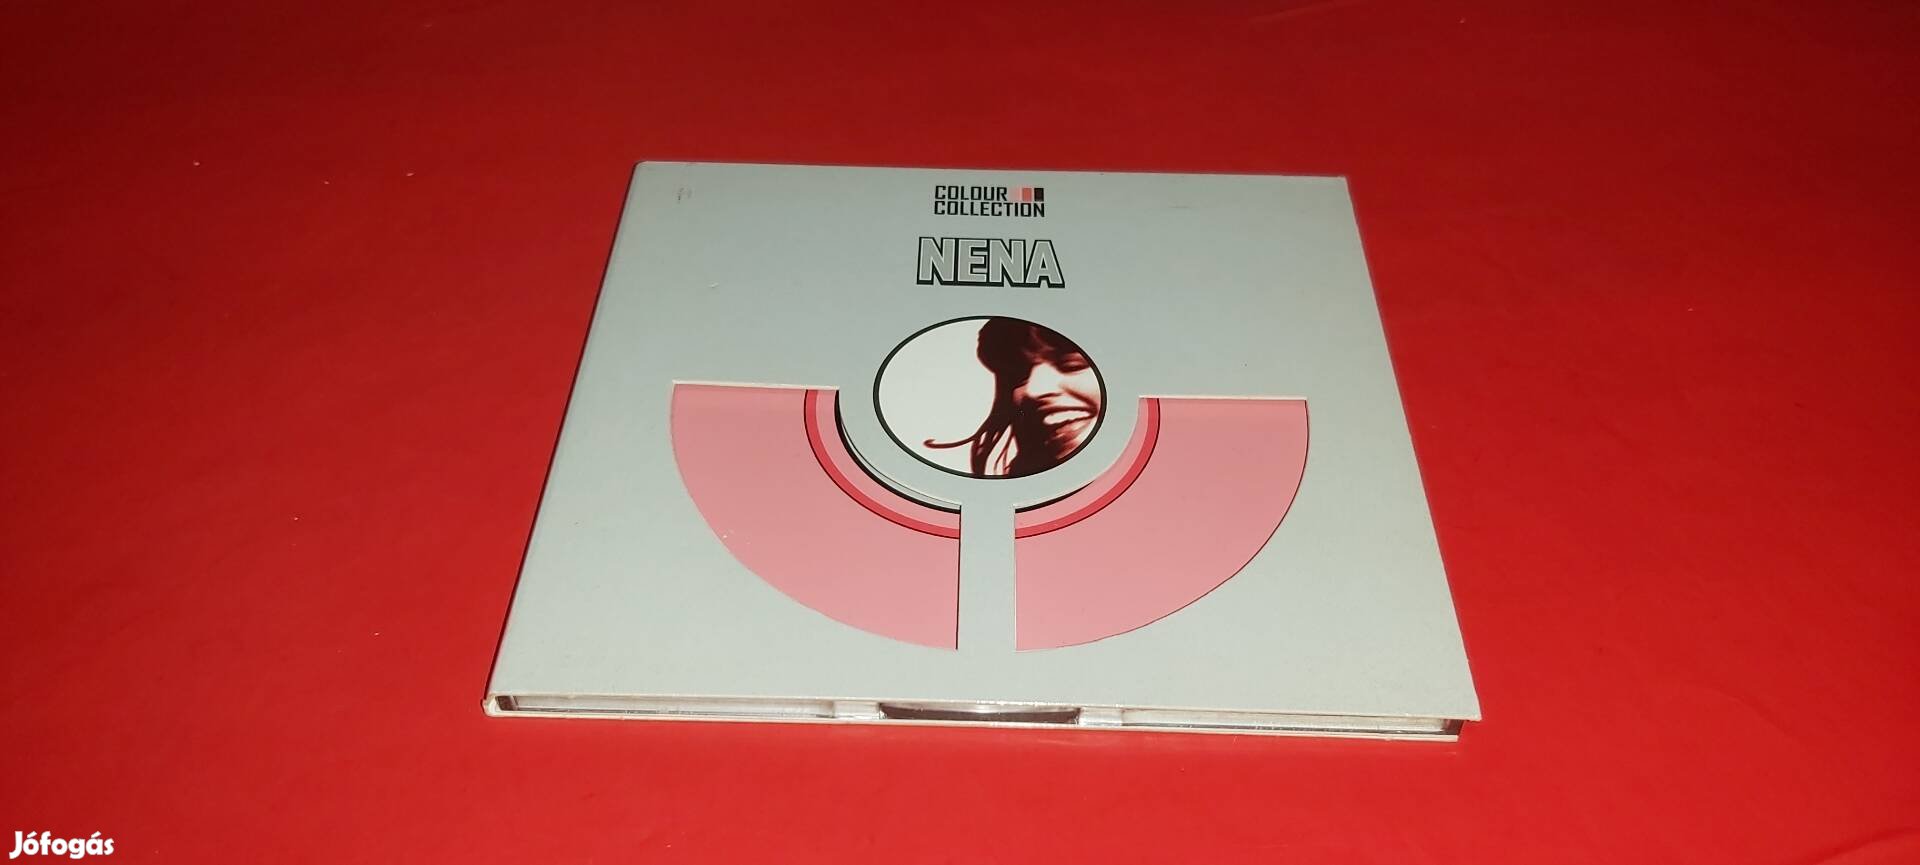 Nena Colour collection Cd 2006